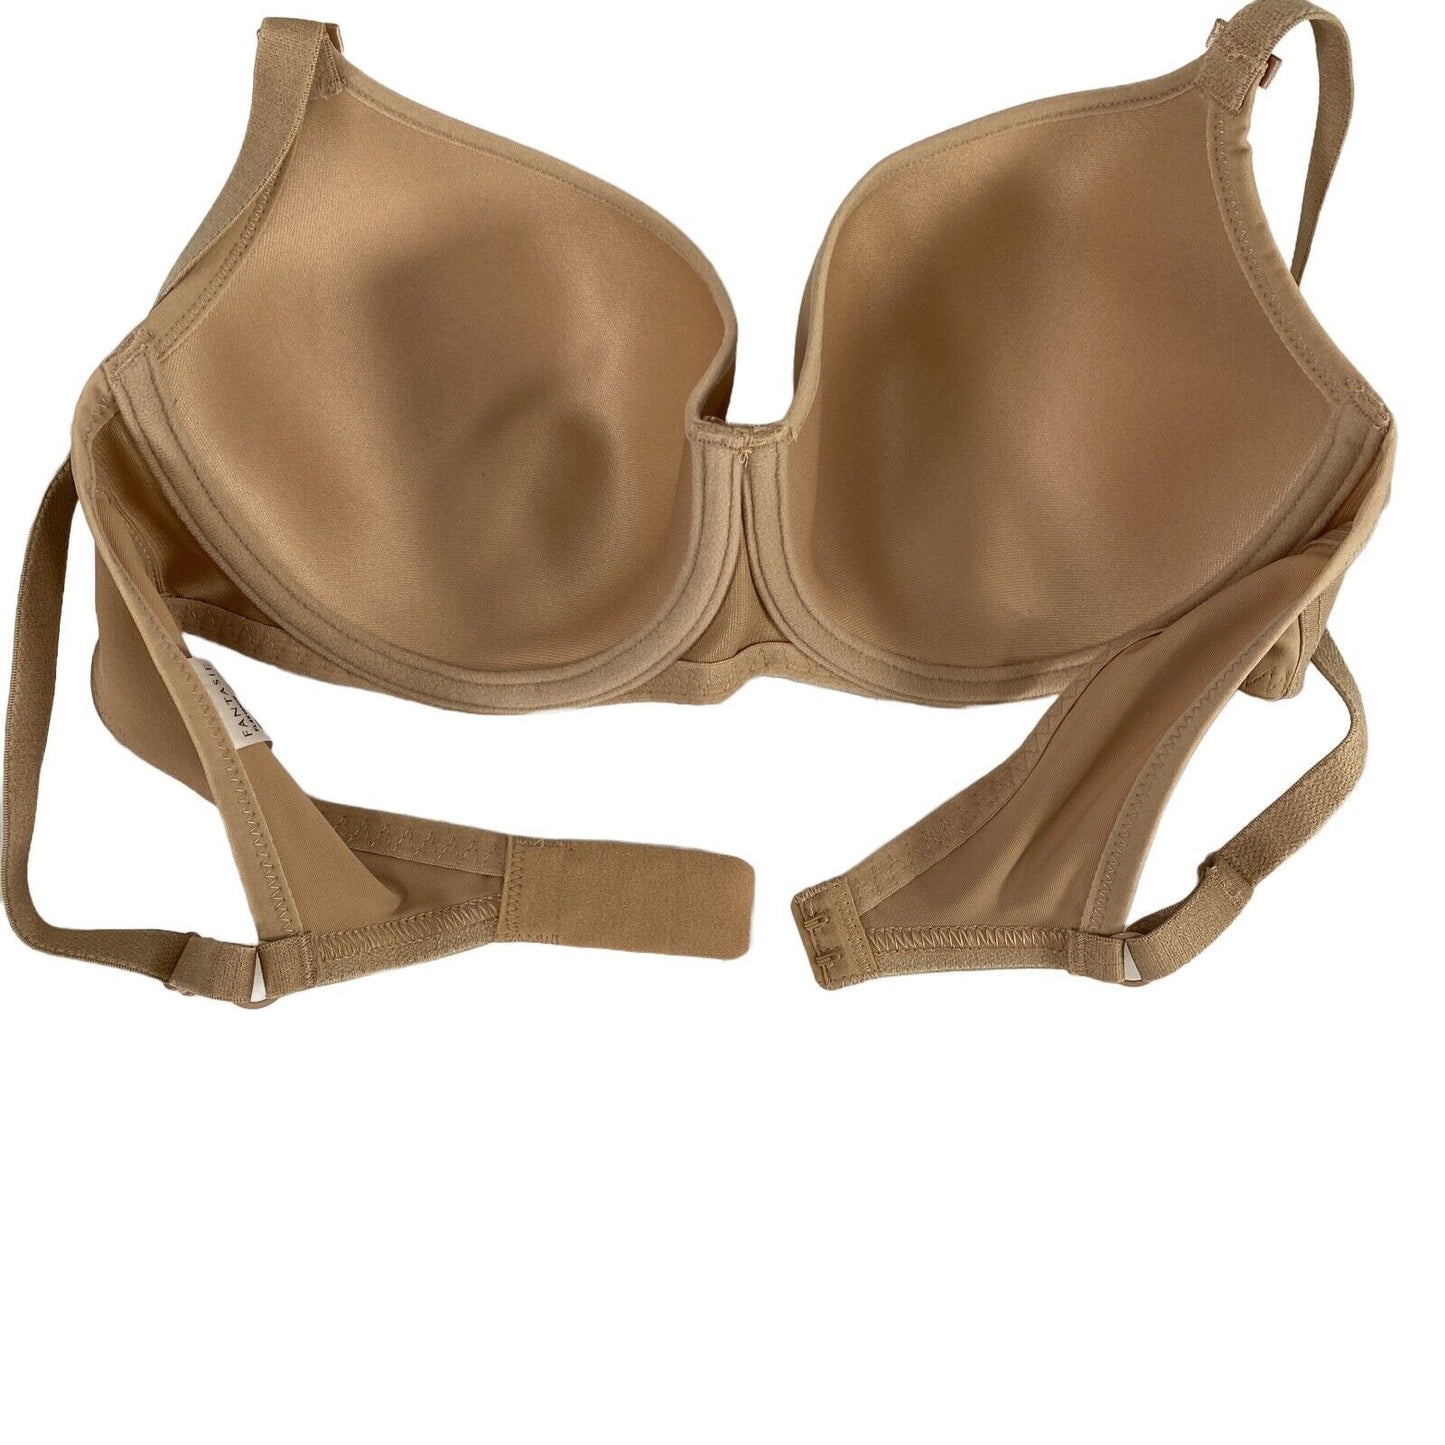 NEW Fantasie Women's Beige/Nude Smoothing T-Shirt Bra FL4510 - 34D